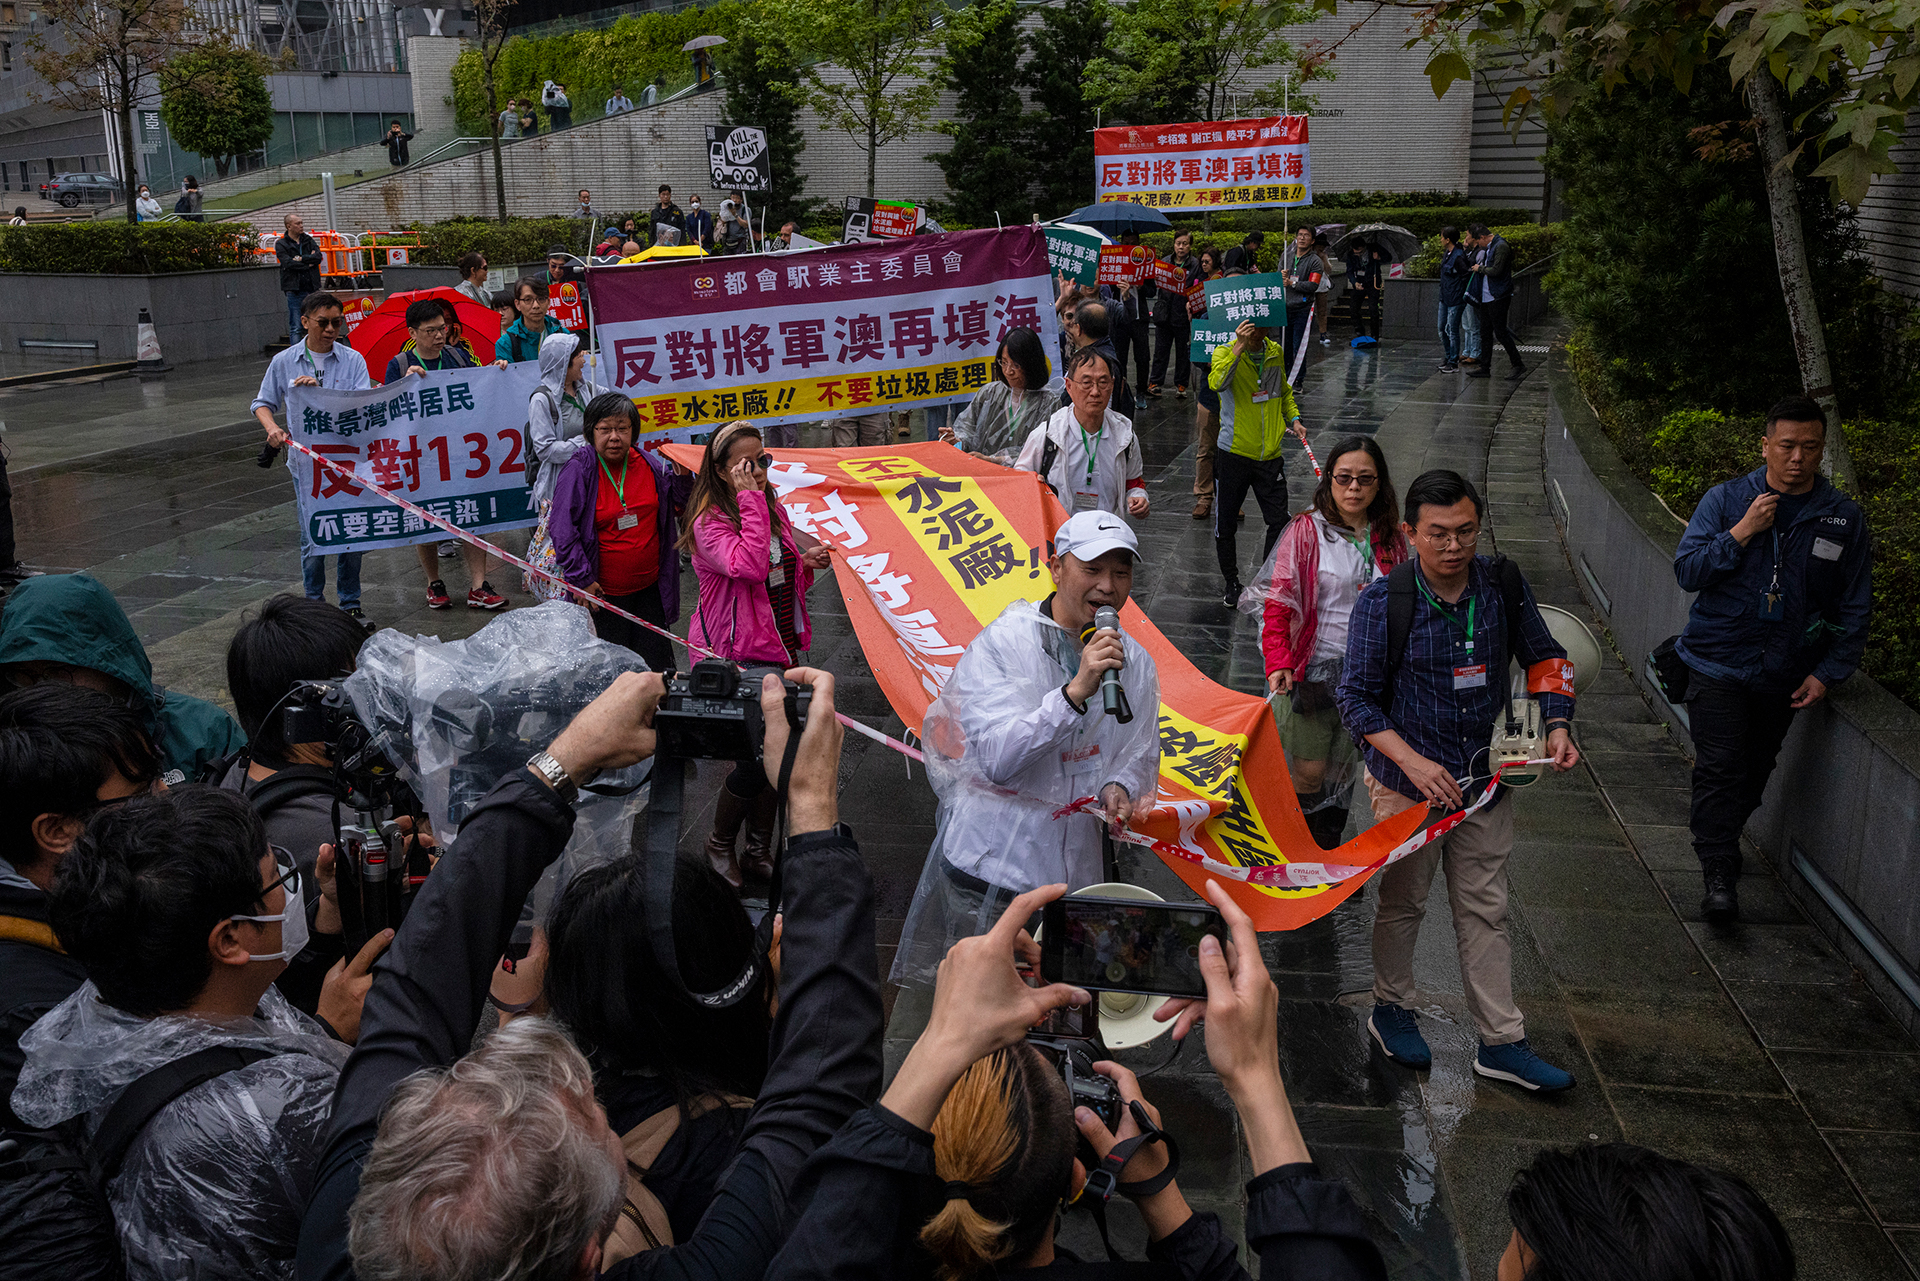 Los hongkoneses realizaron su primera protesta desde 2019 bajo las estrictas nuevas reglas del régimen chino